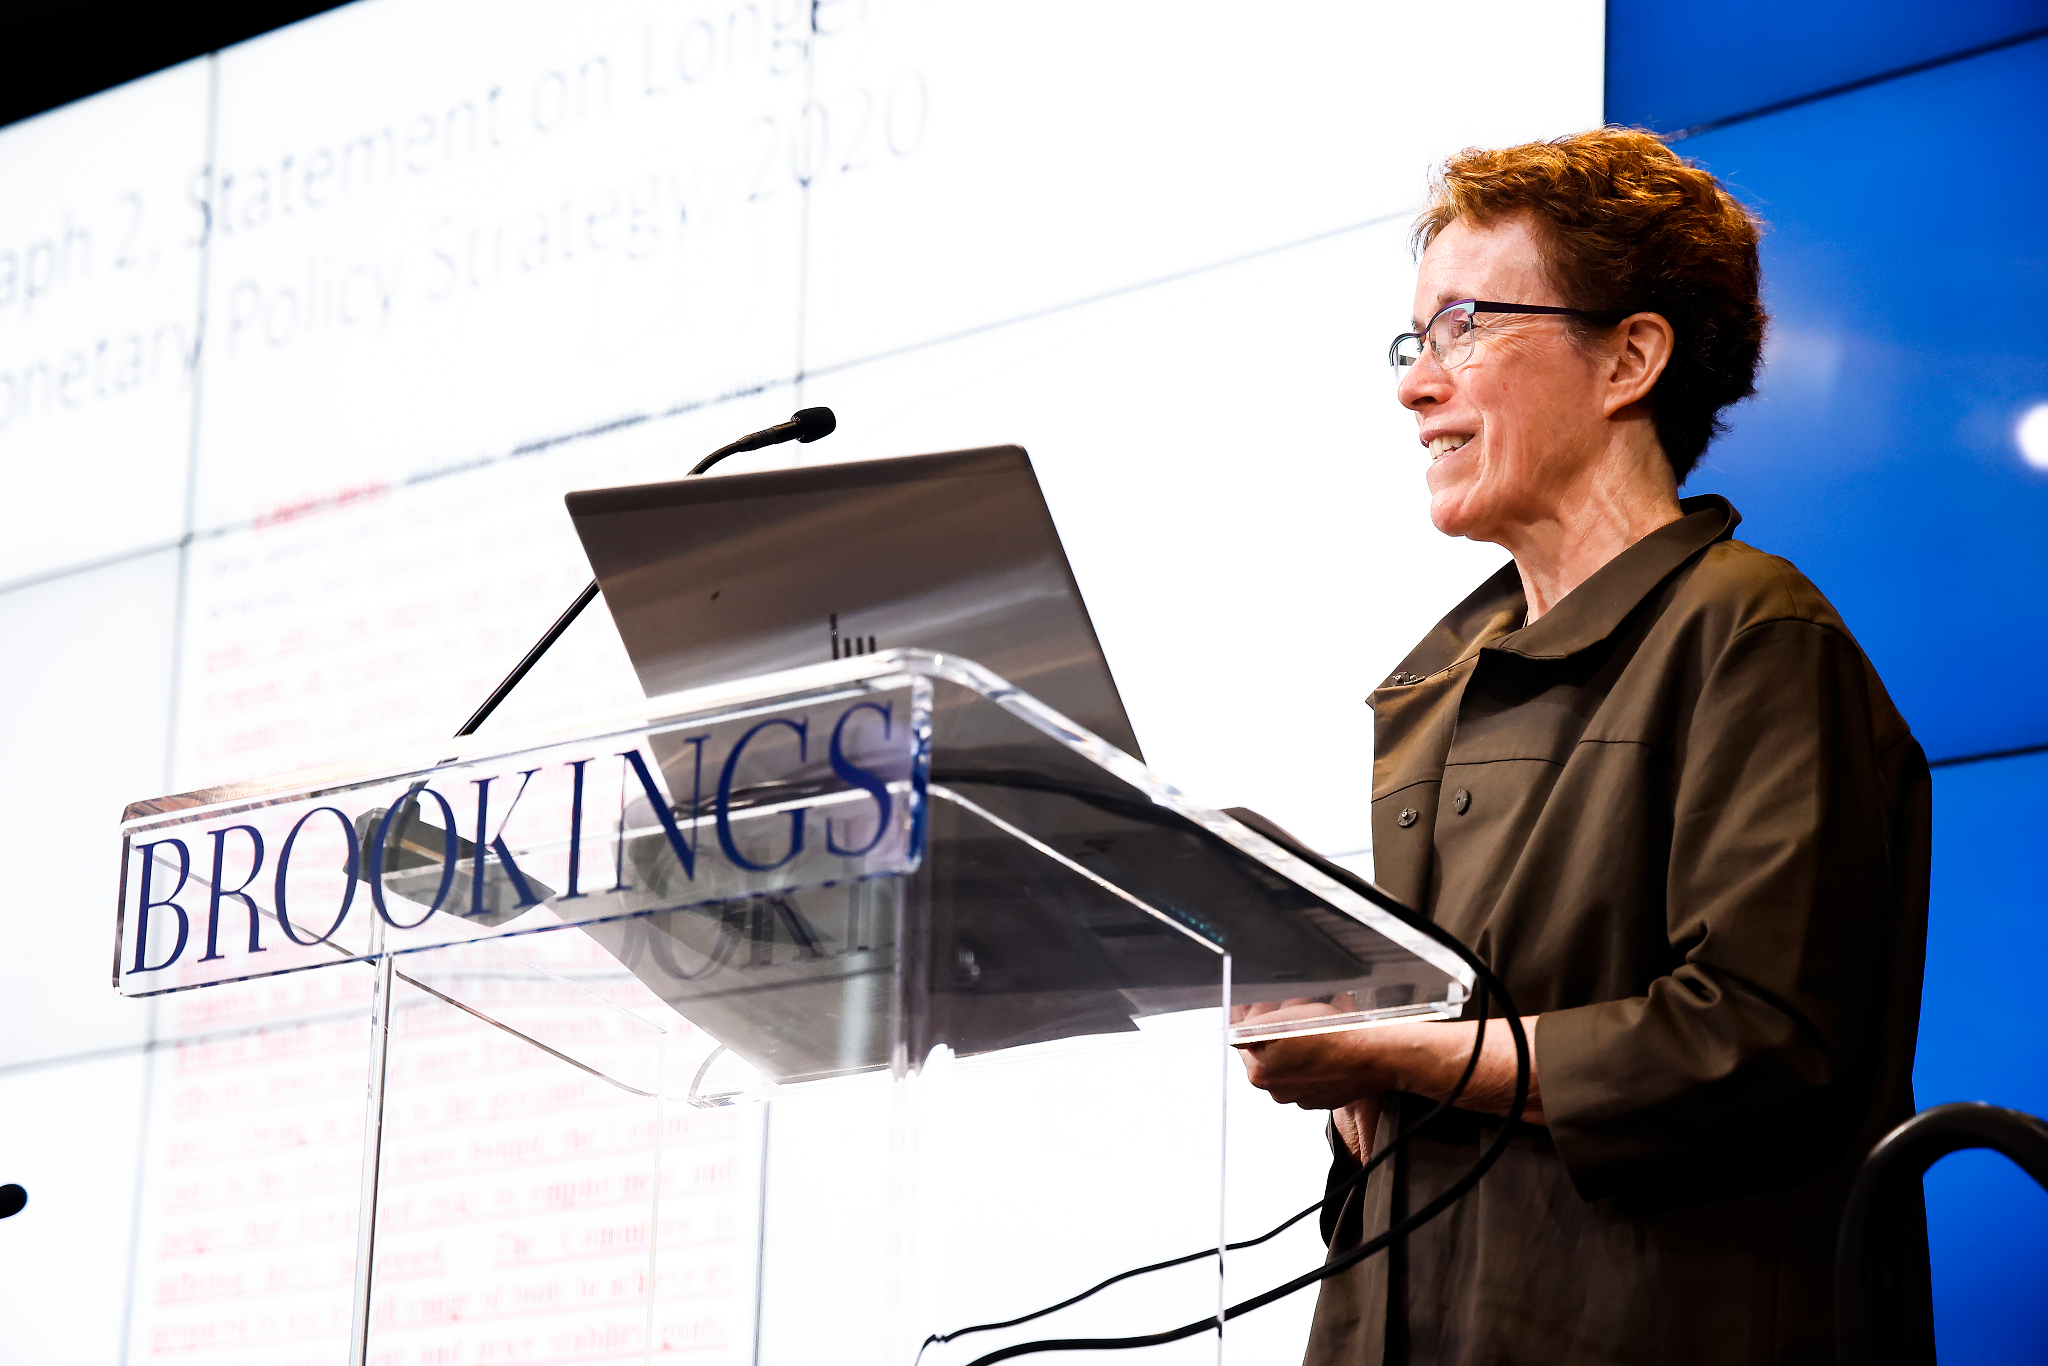 Ellen Meade presenting at Brookings